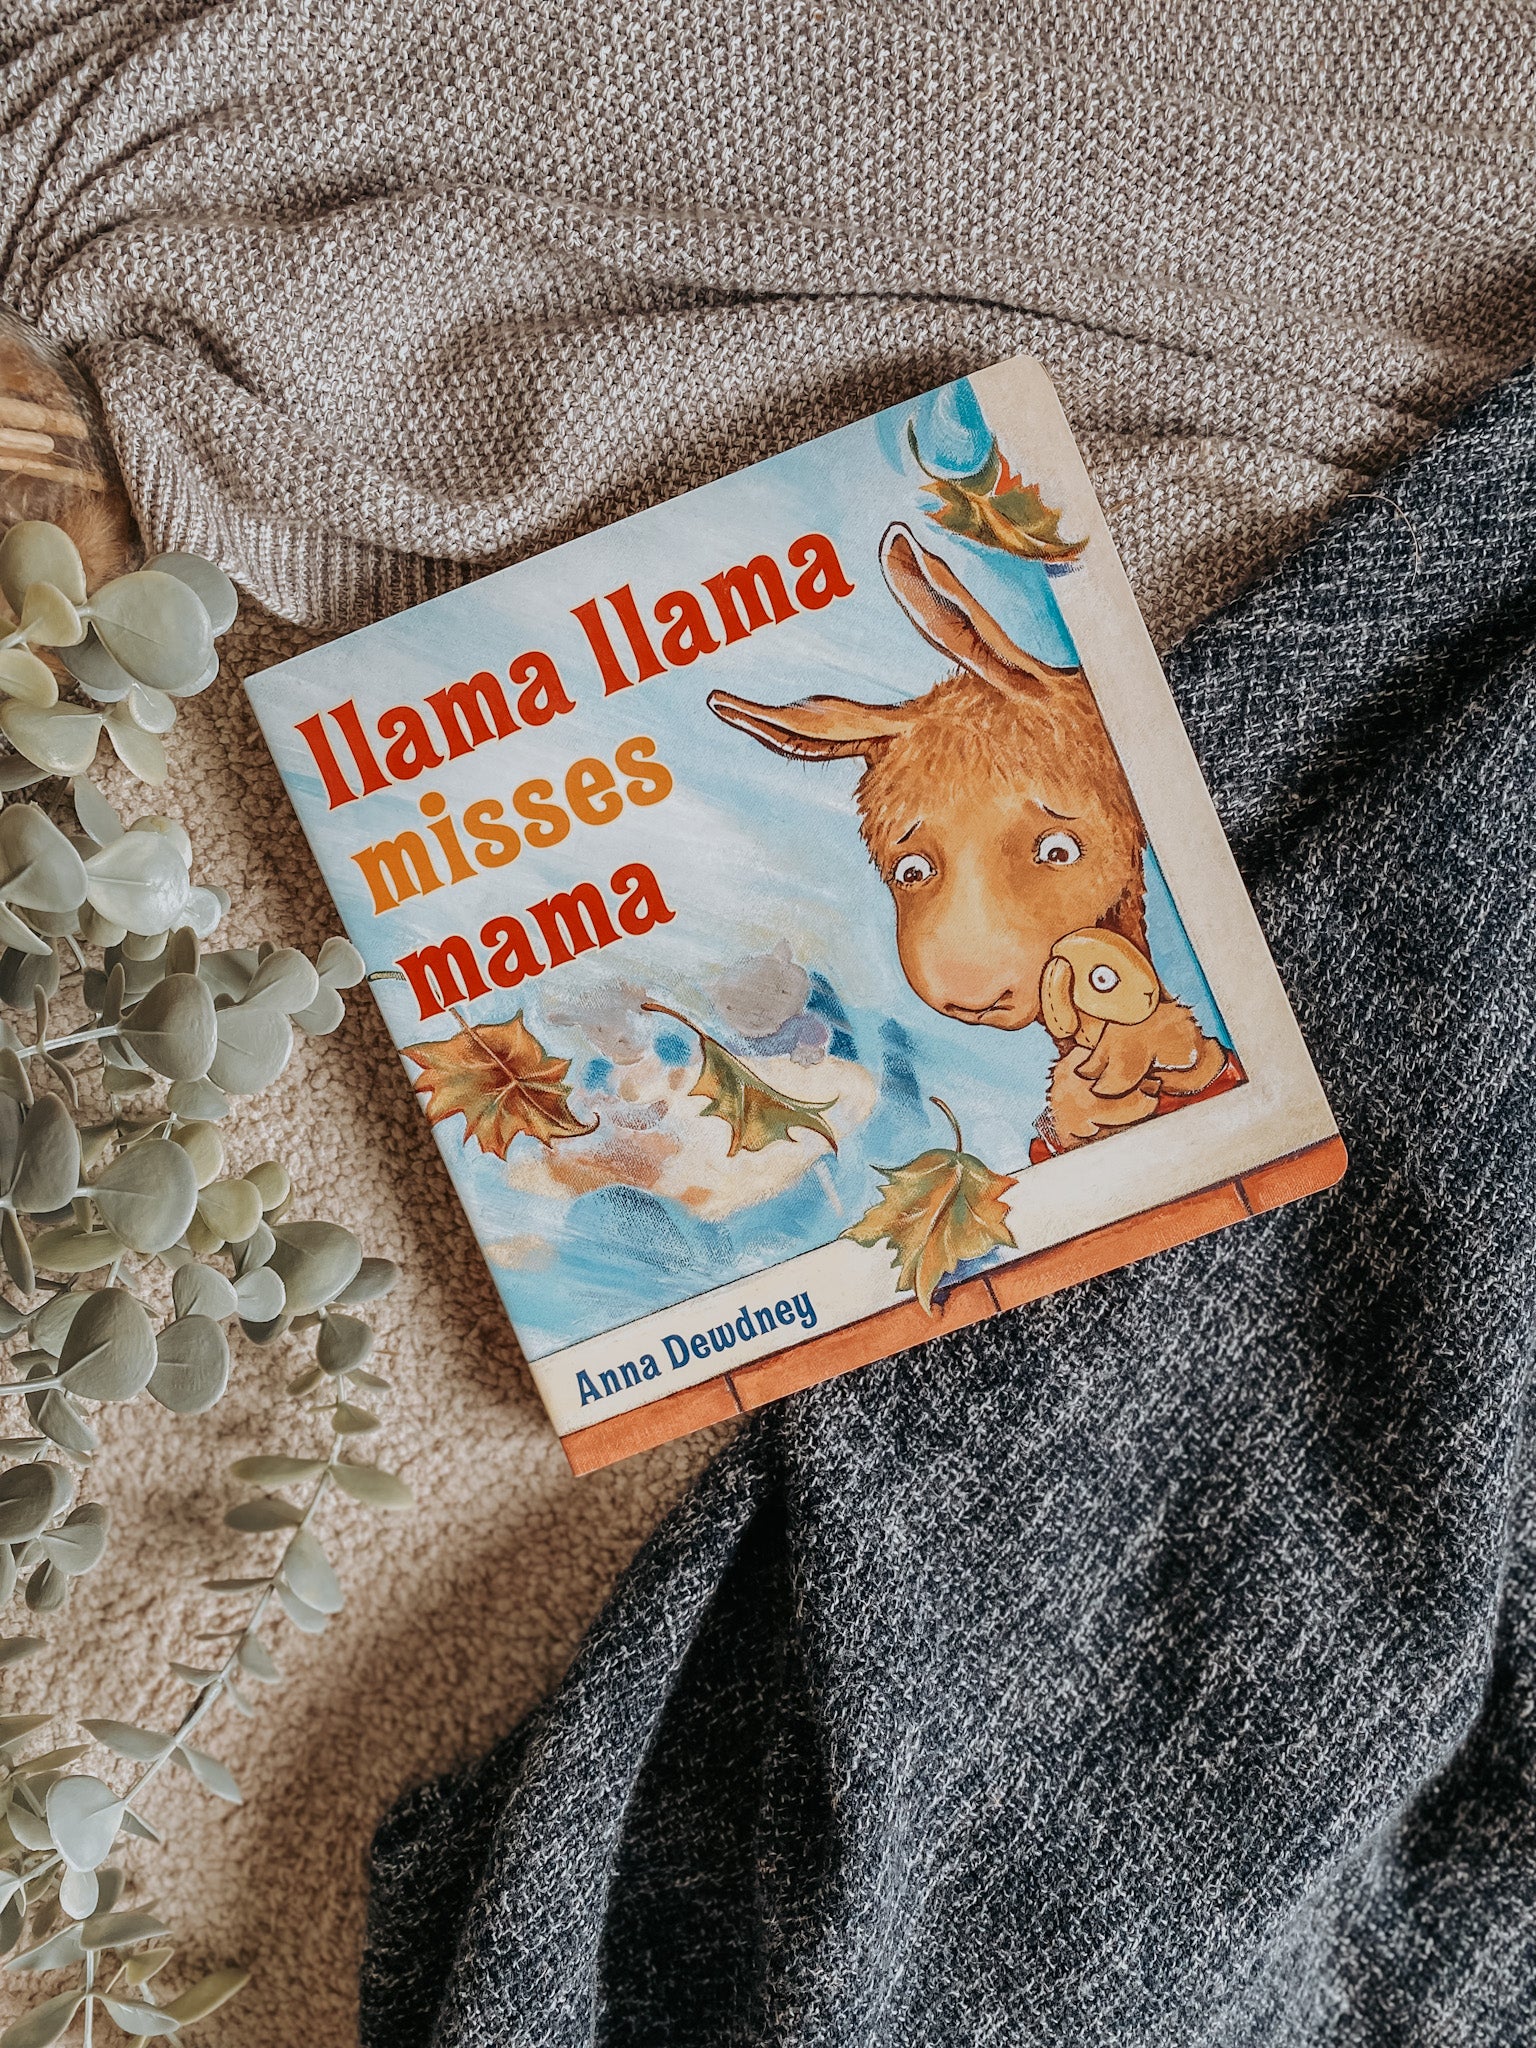 Llama Llama Book Series